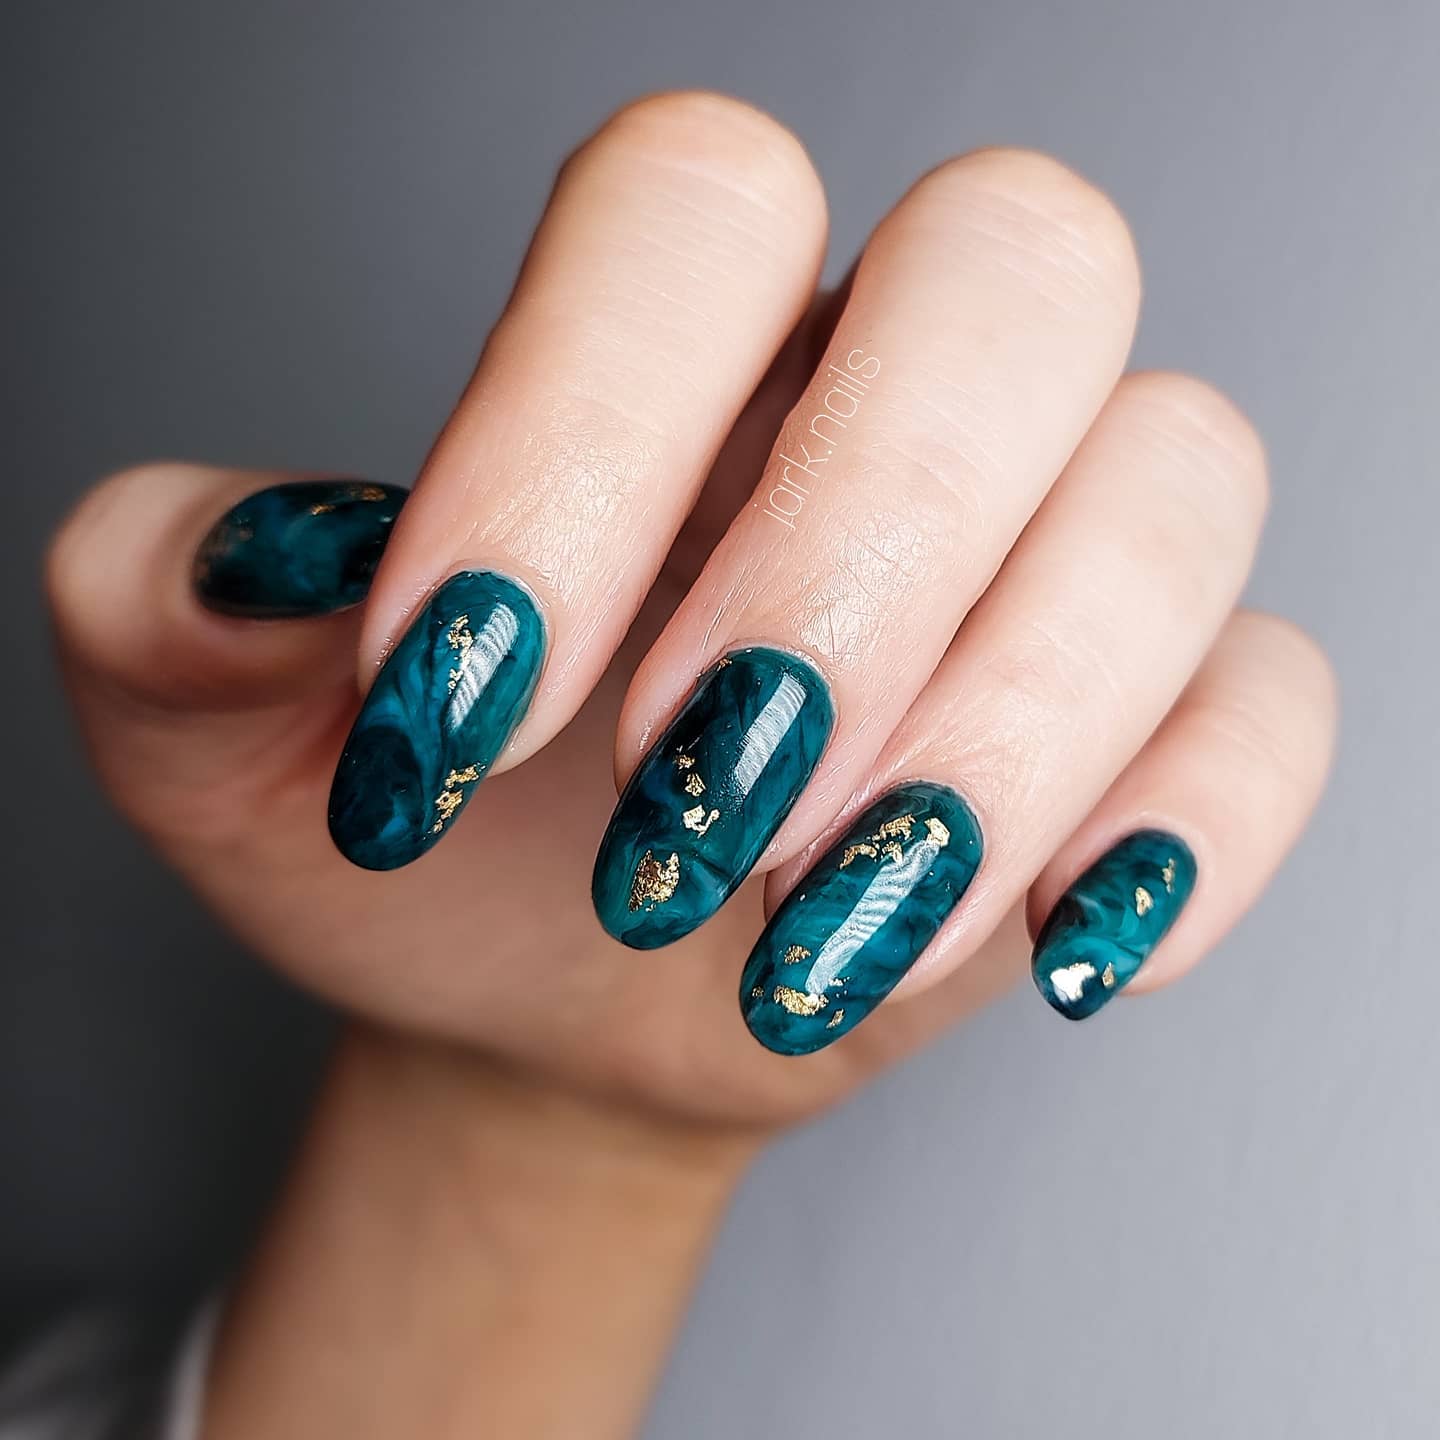 Mermaid Teal Nails